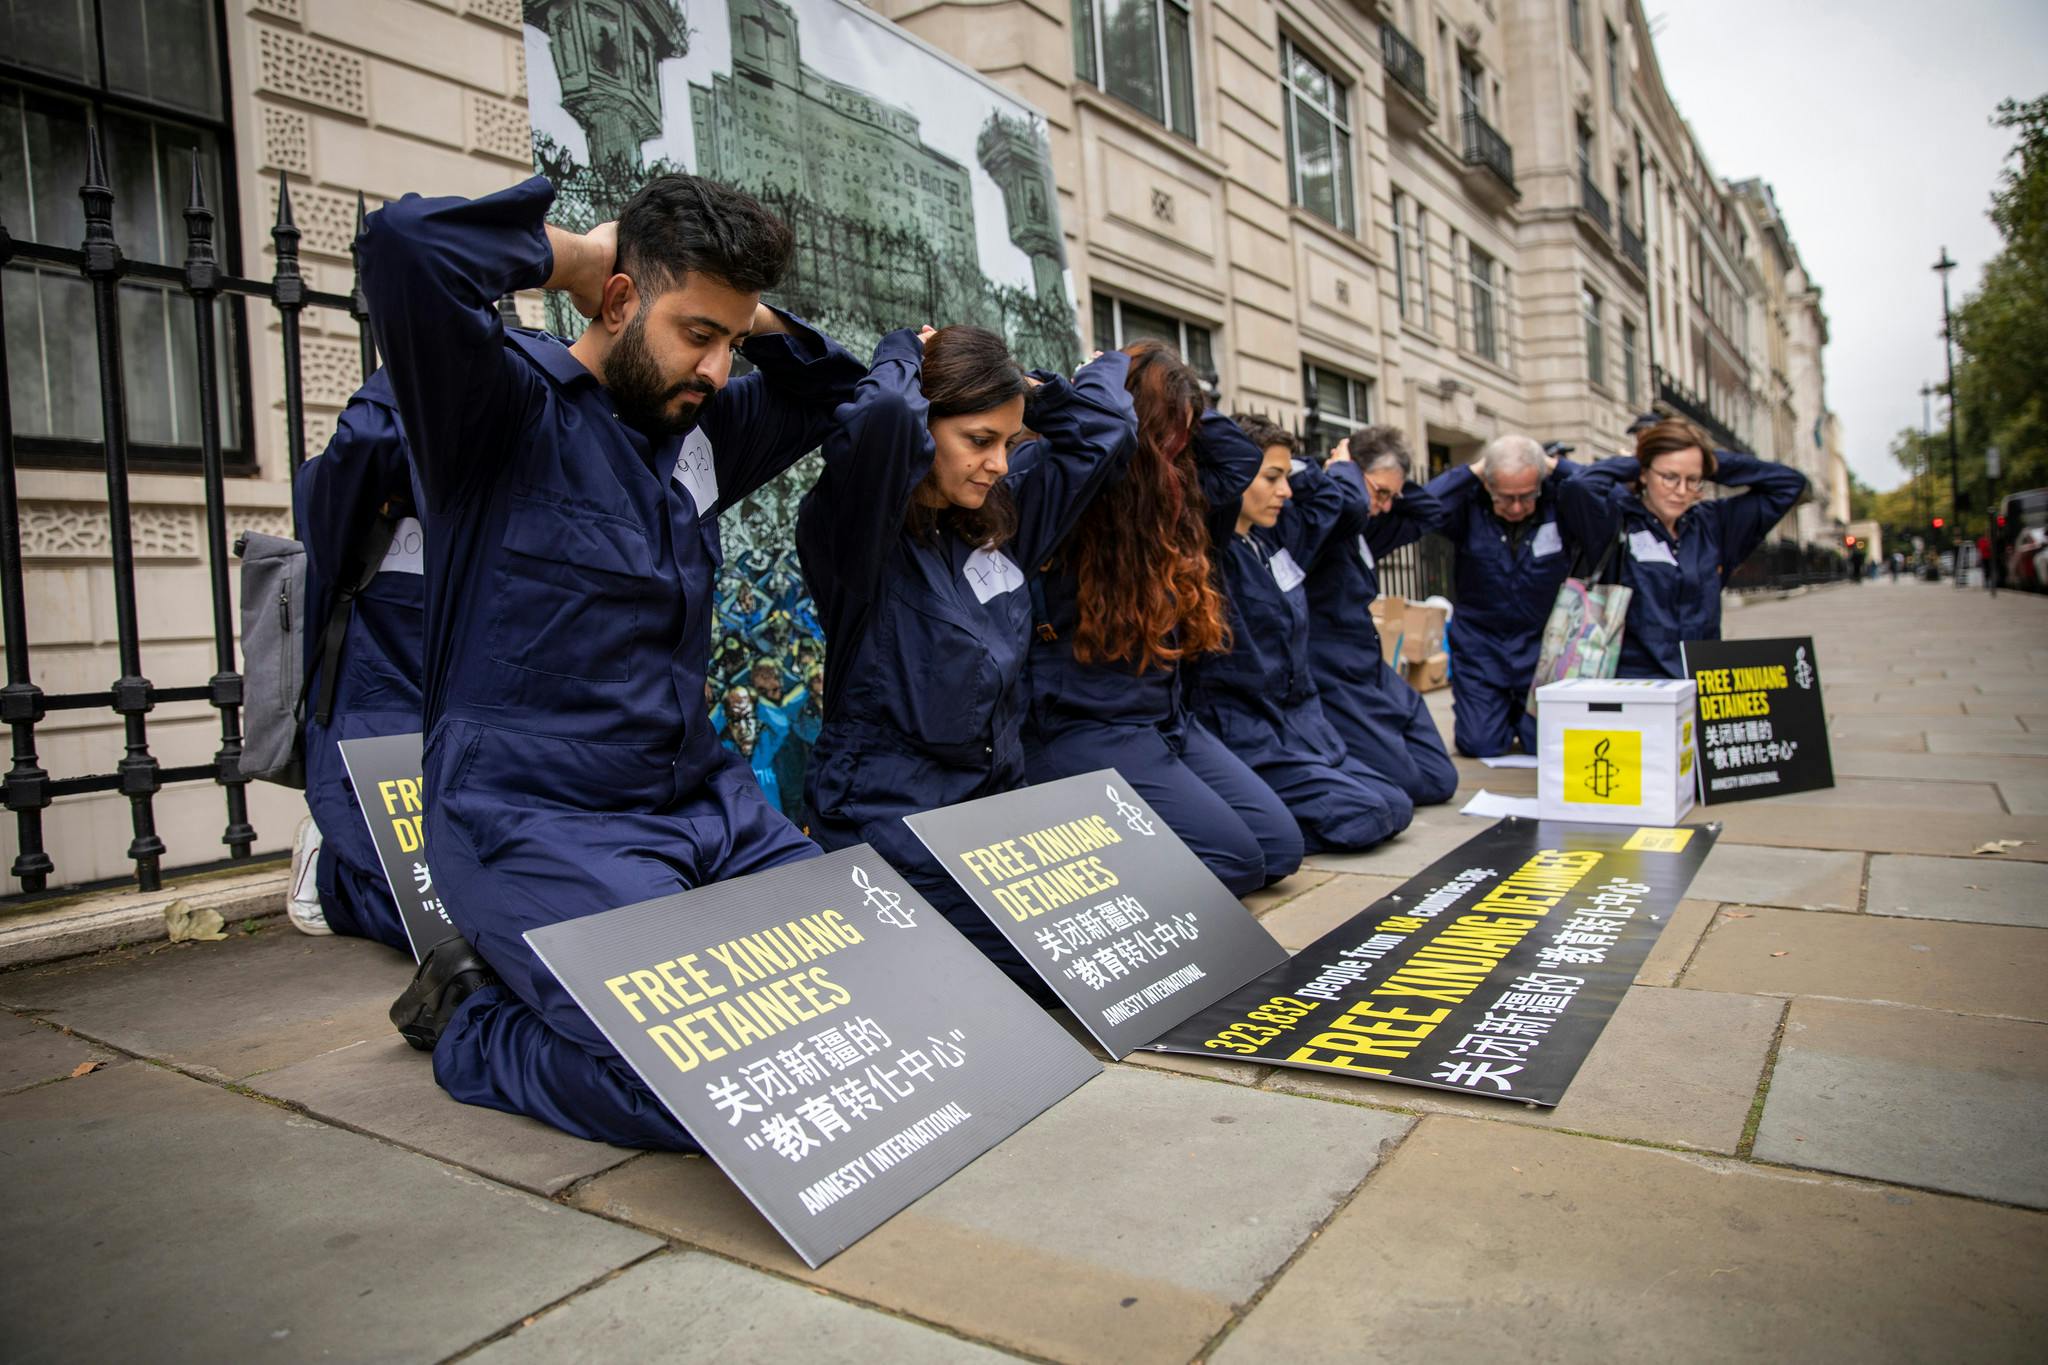 Remise de pétition pour libération des minorités musulmanes détenues dans le Xinjiang. Londres